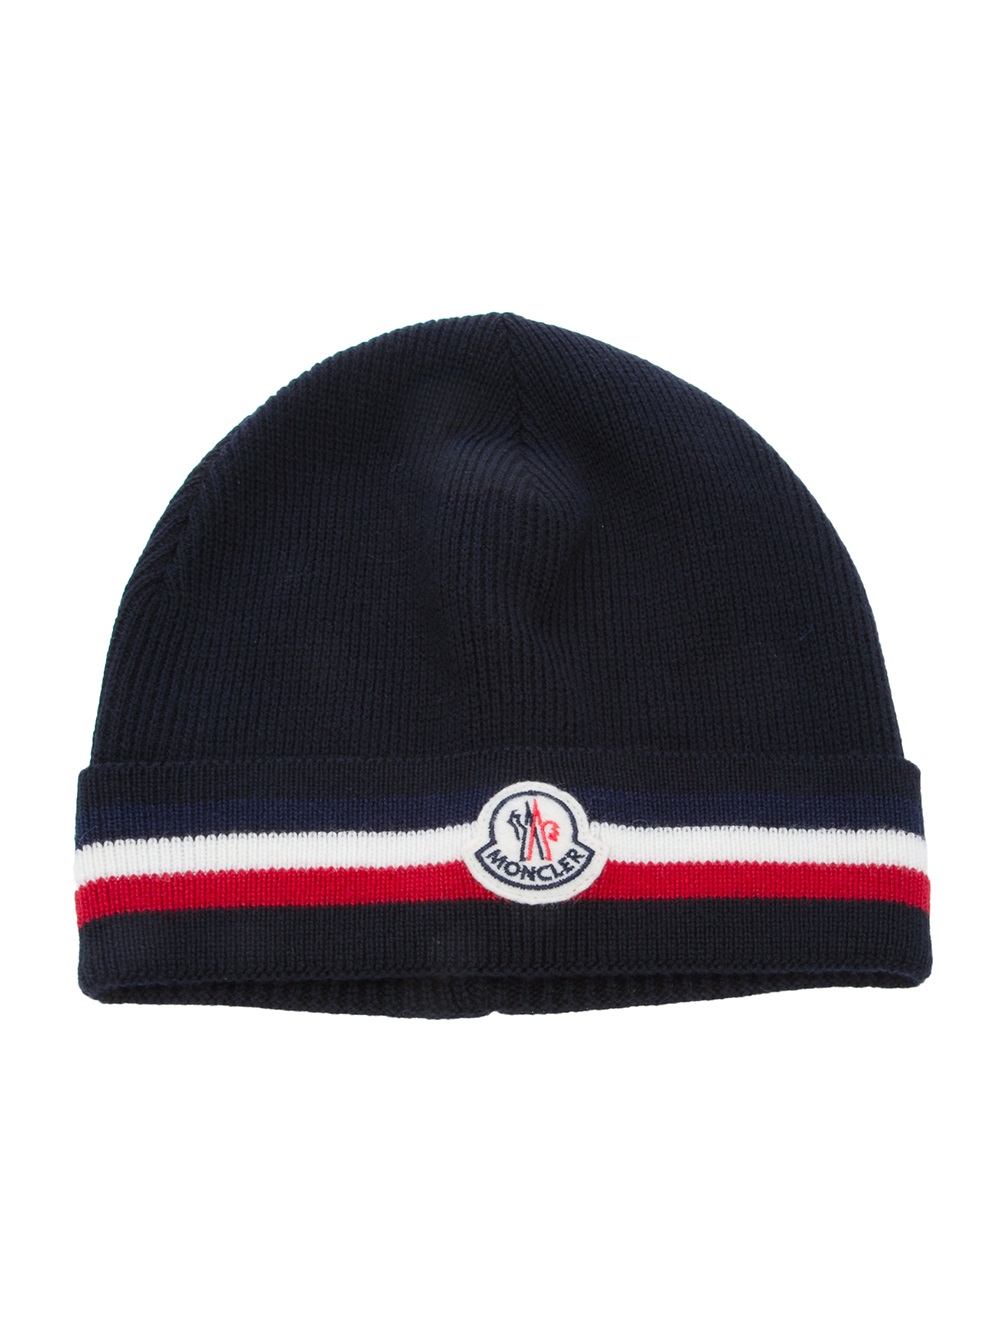 Moncler Logo Beanie Hat in Navy (Blue) for Men - Lyst